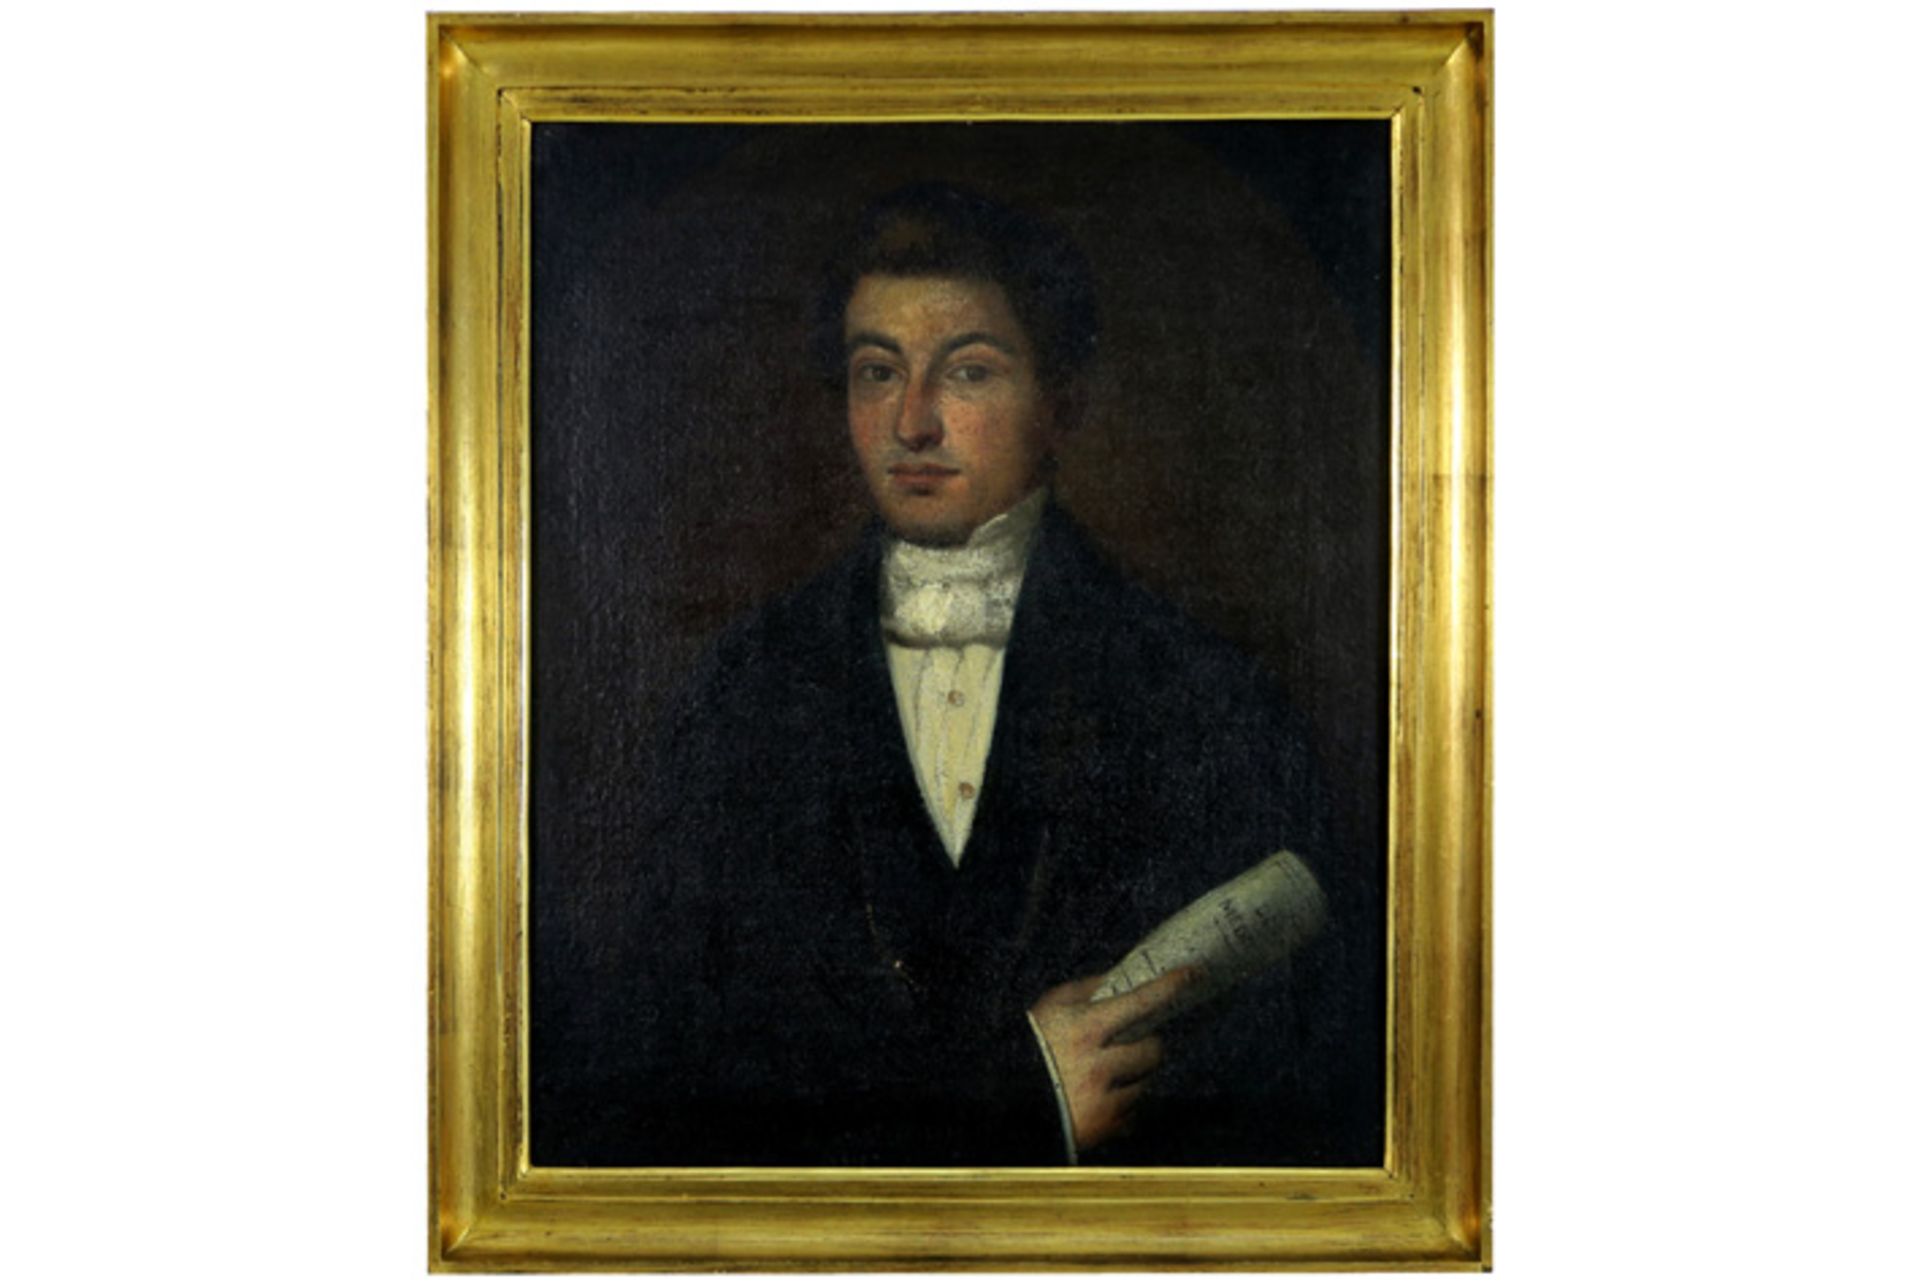 Negentiende eeuws olieverfschilderij op doek : "Portret van een jonge man met krant" - 69 x 57 || - Image 2 of 4